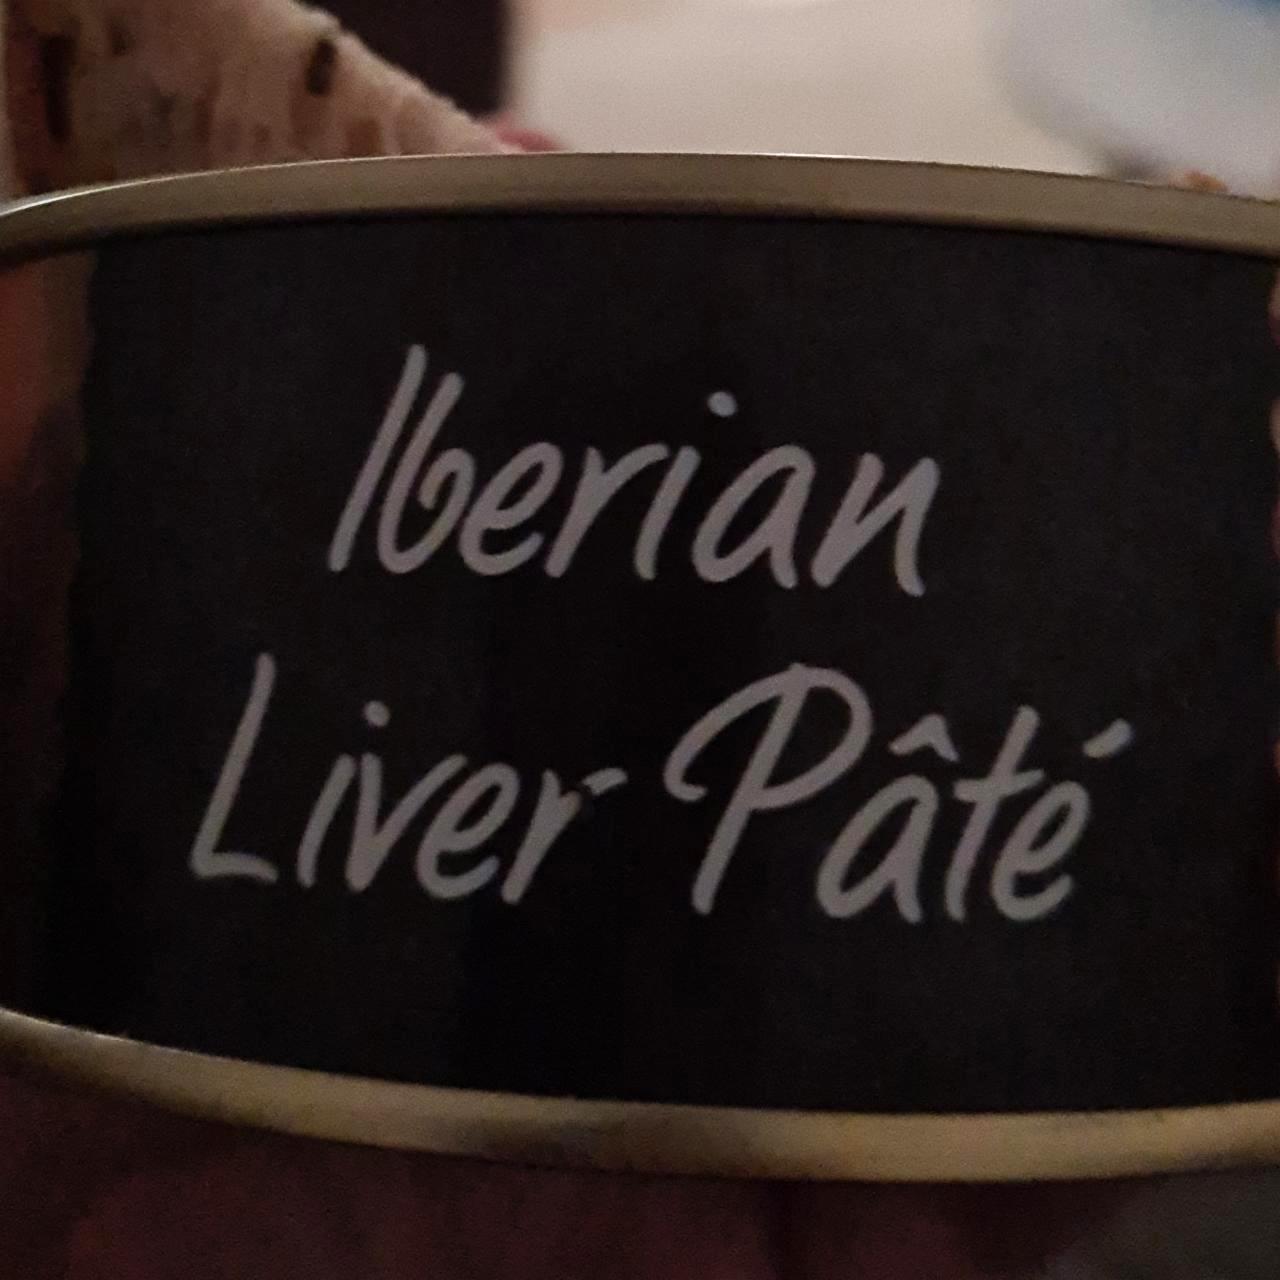 Fotografie - iberian liver paté